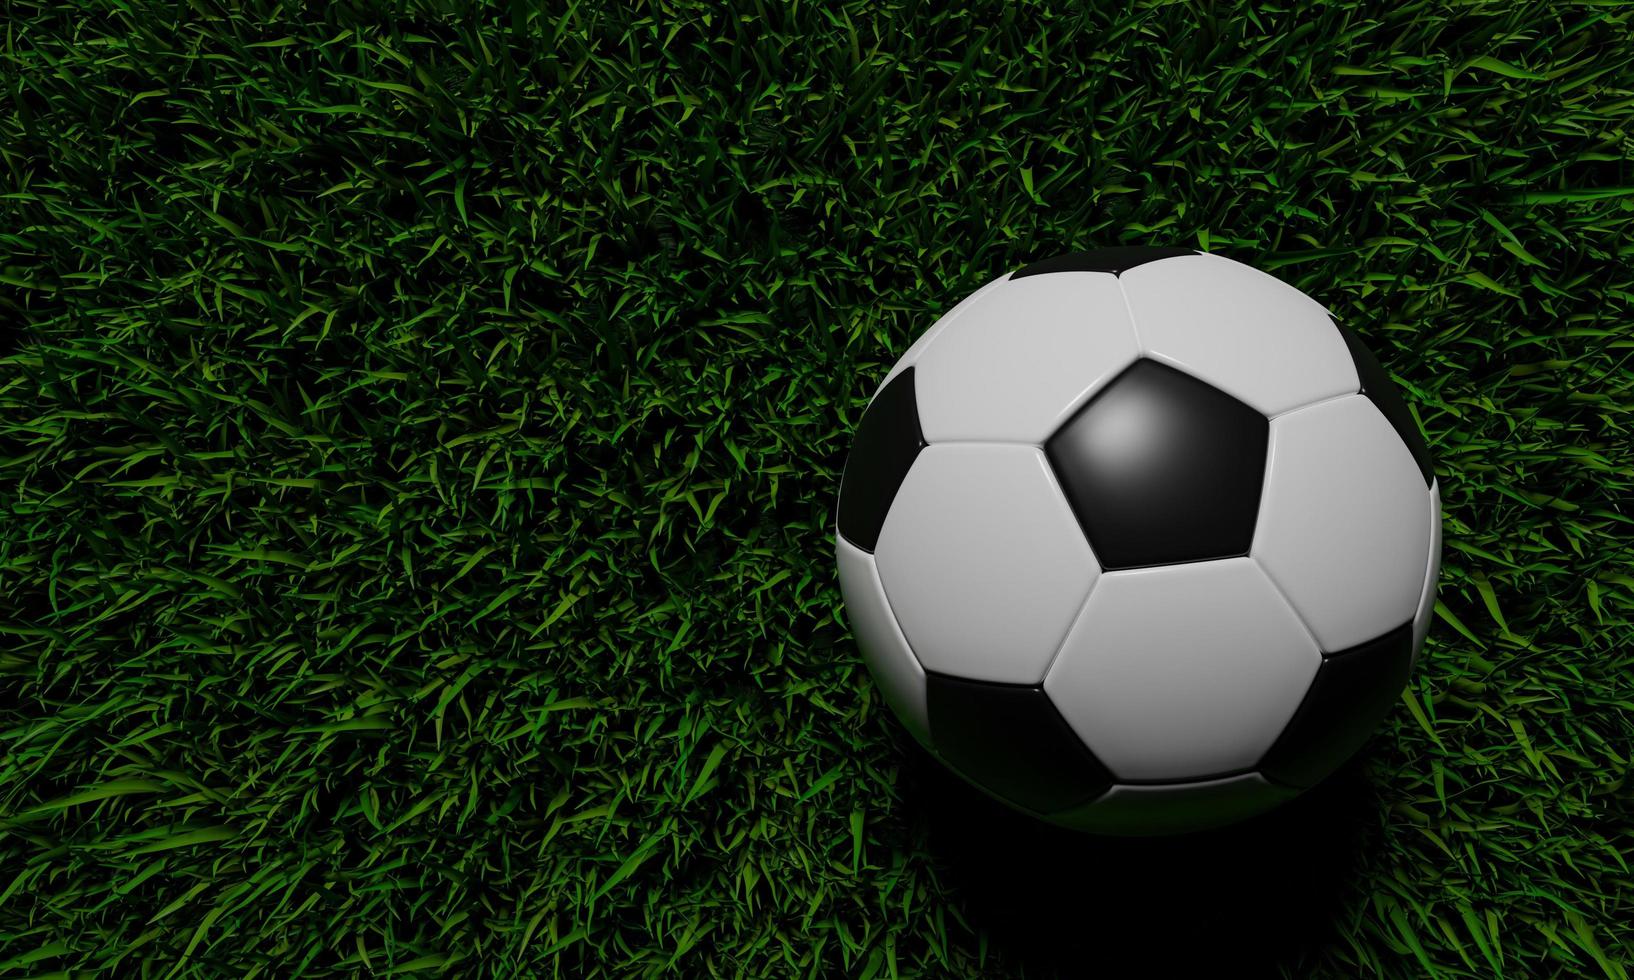 realistische voetbal of voetbal bal basispatroon op groen grasveld. 3D-stijl en weergaveconcept voor game en olympisch japan 2020. foto